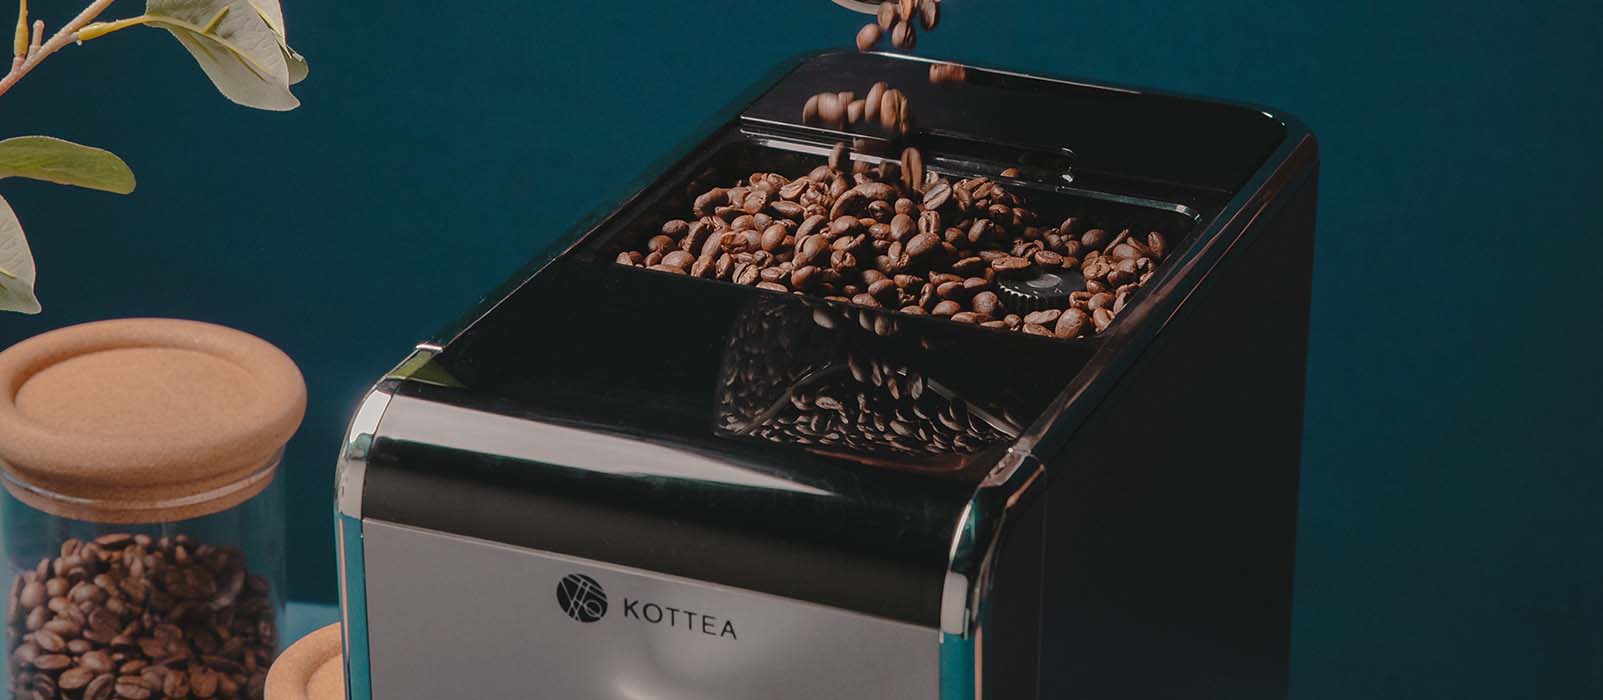 meilleure machine à café avec broyeur silencieux comparatif